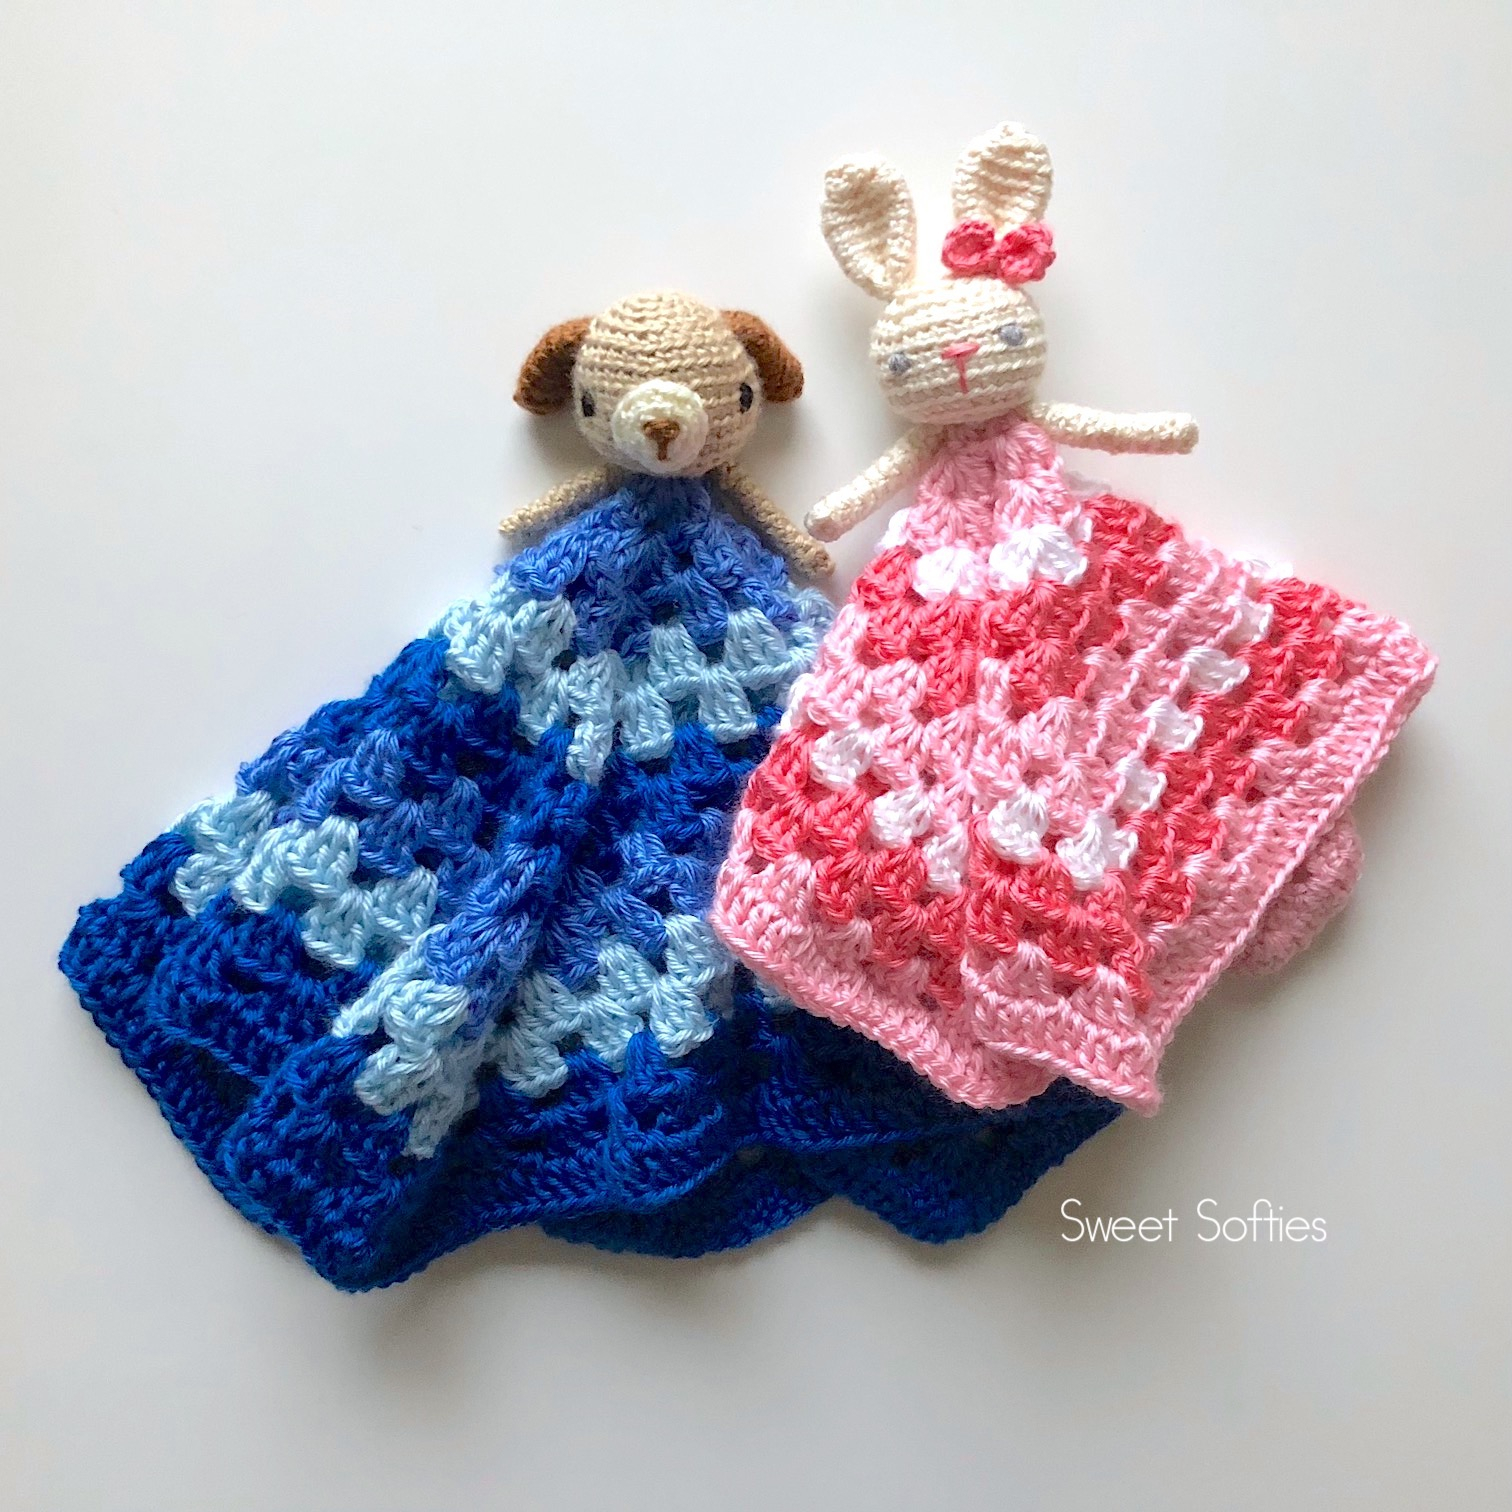 Free Crochet Lovey Pattern Puppy Bunny Loveys Free Crochet Pattern Sweet Softies